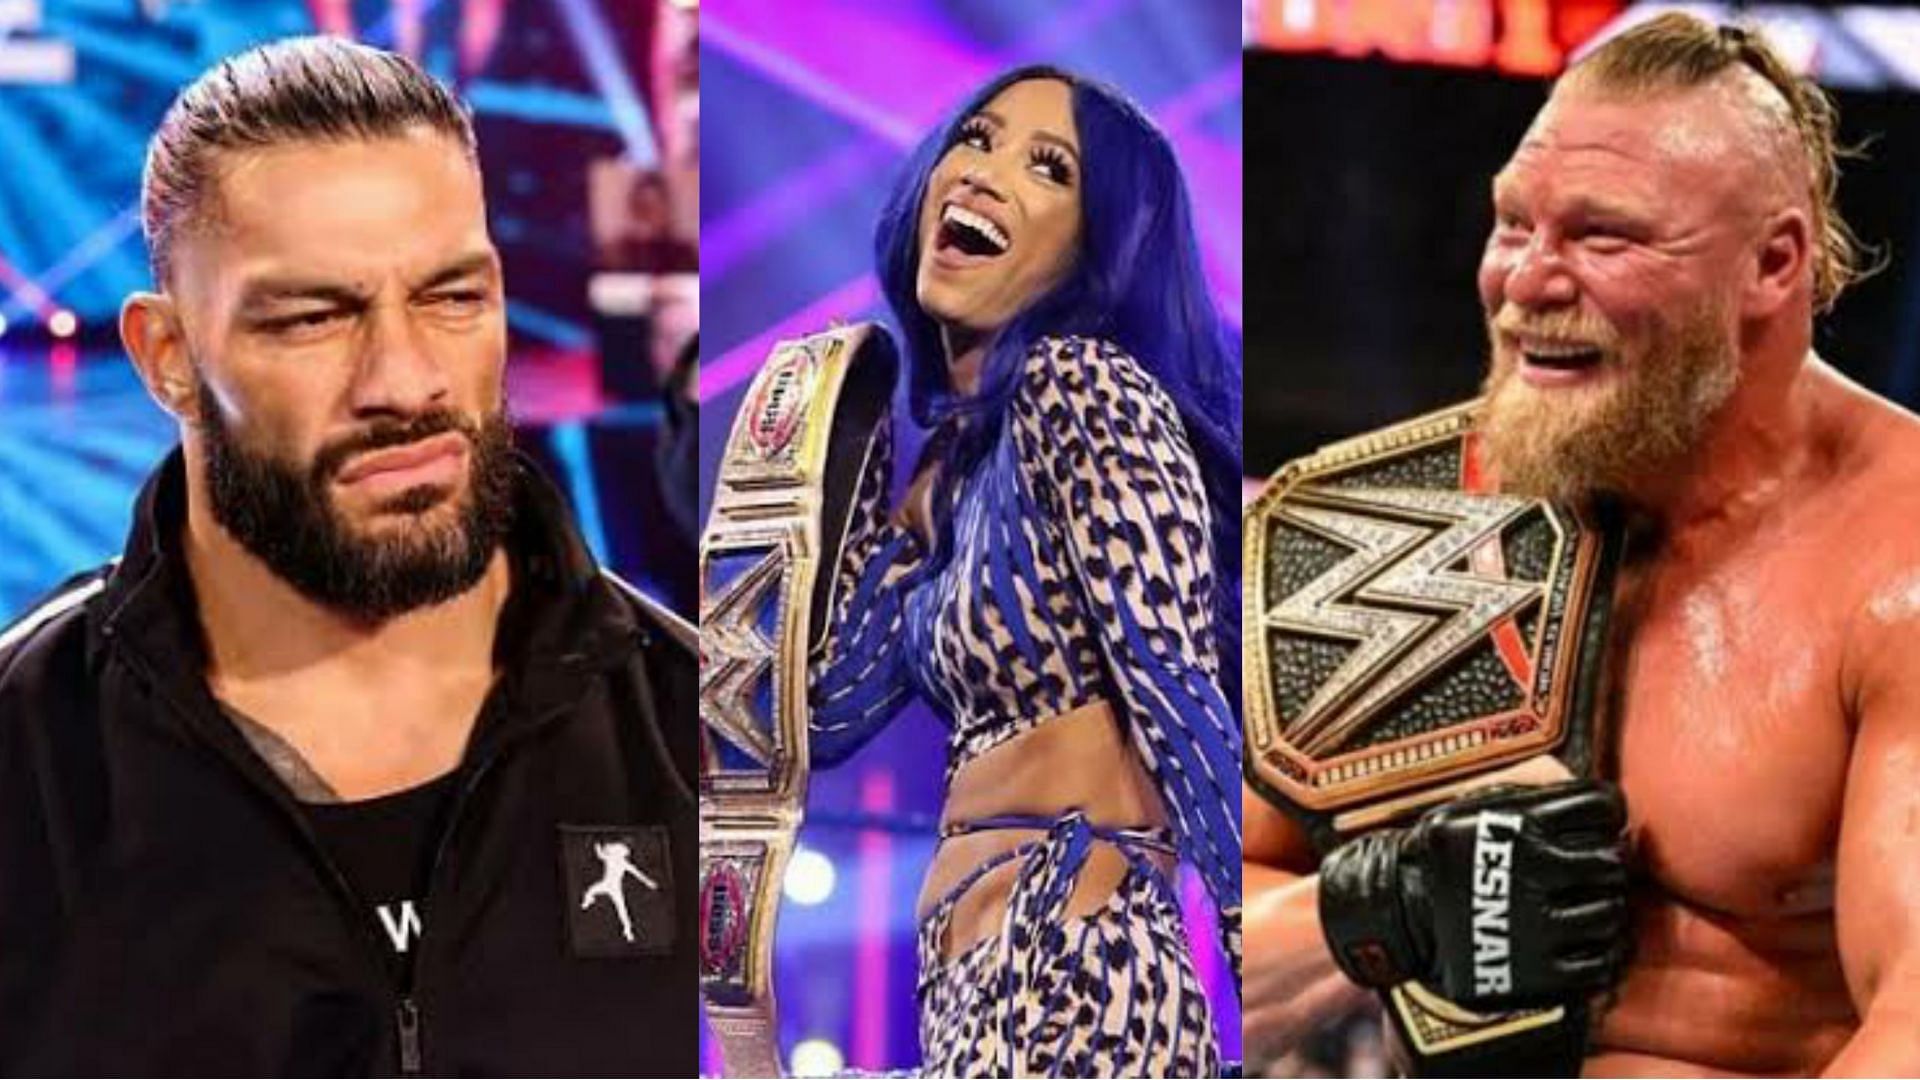 Roman Reigns; Sasha Banks; Brock Lesnar